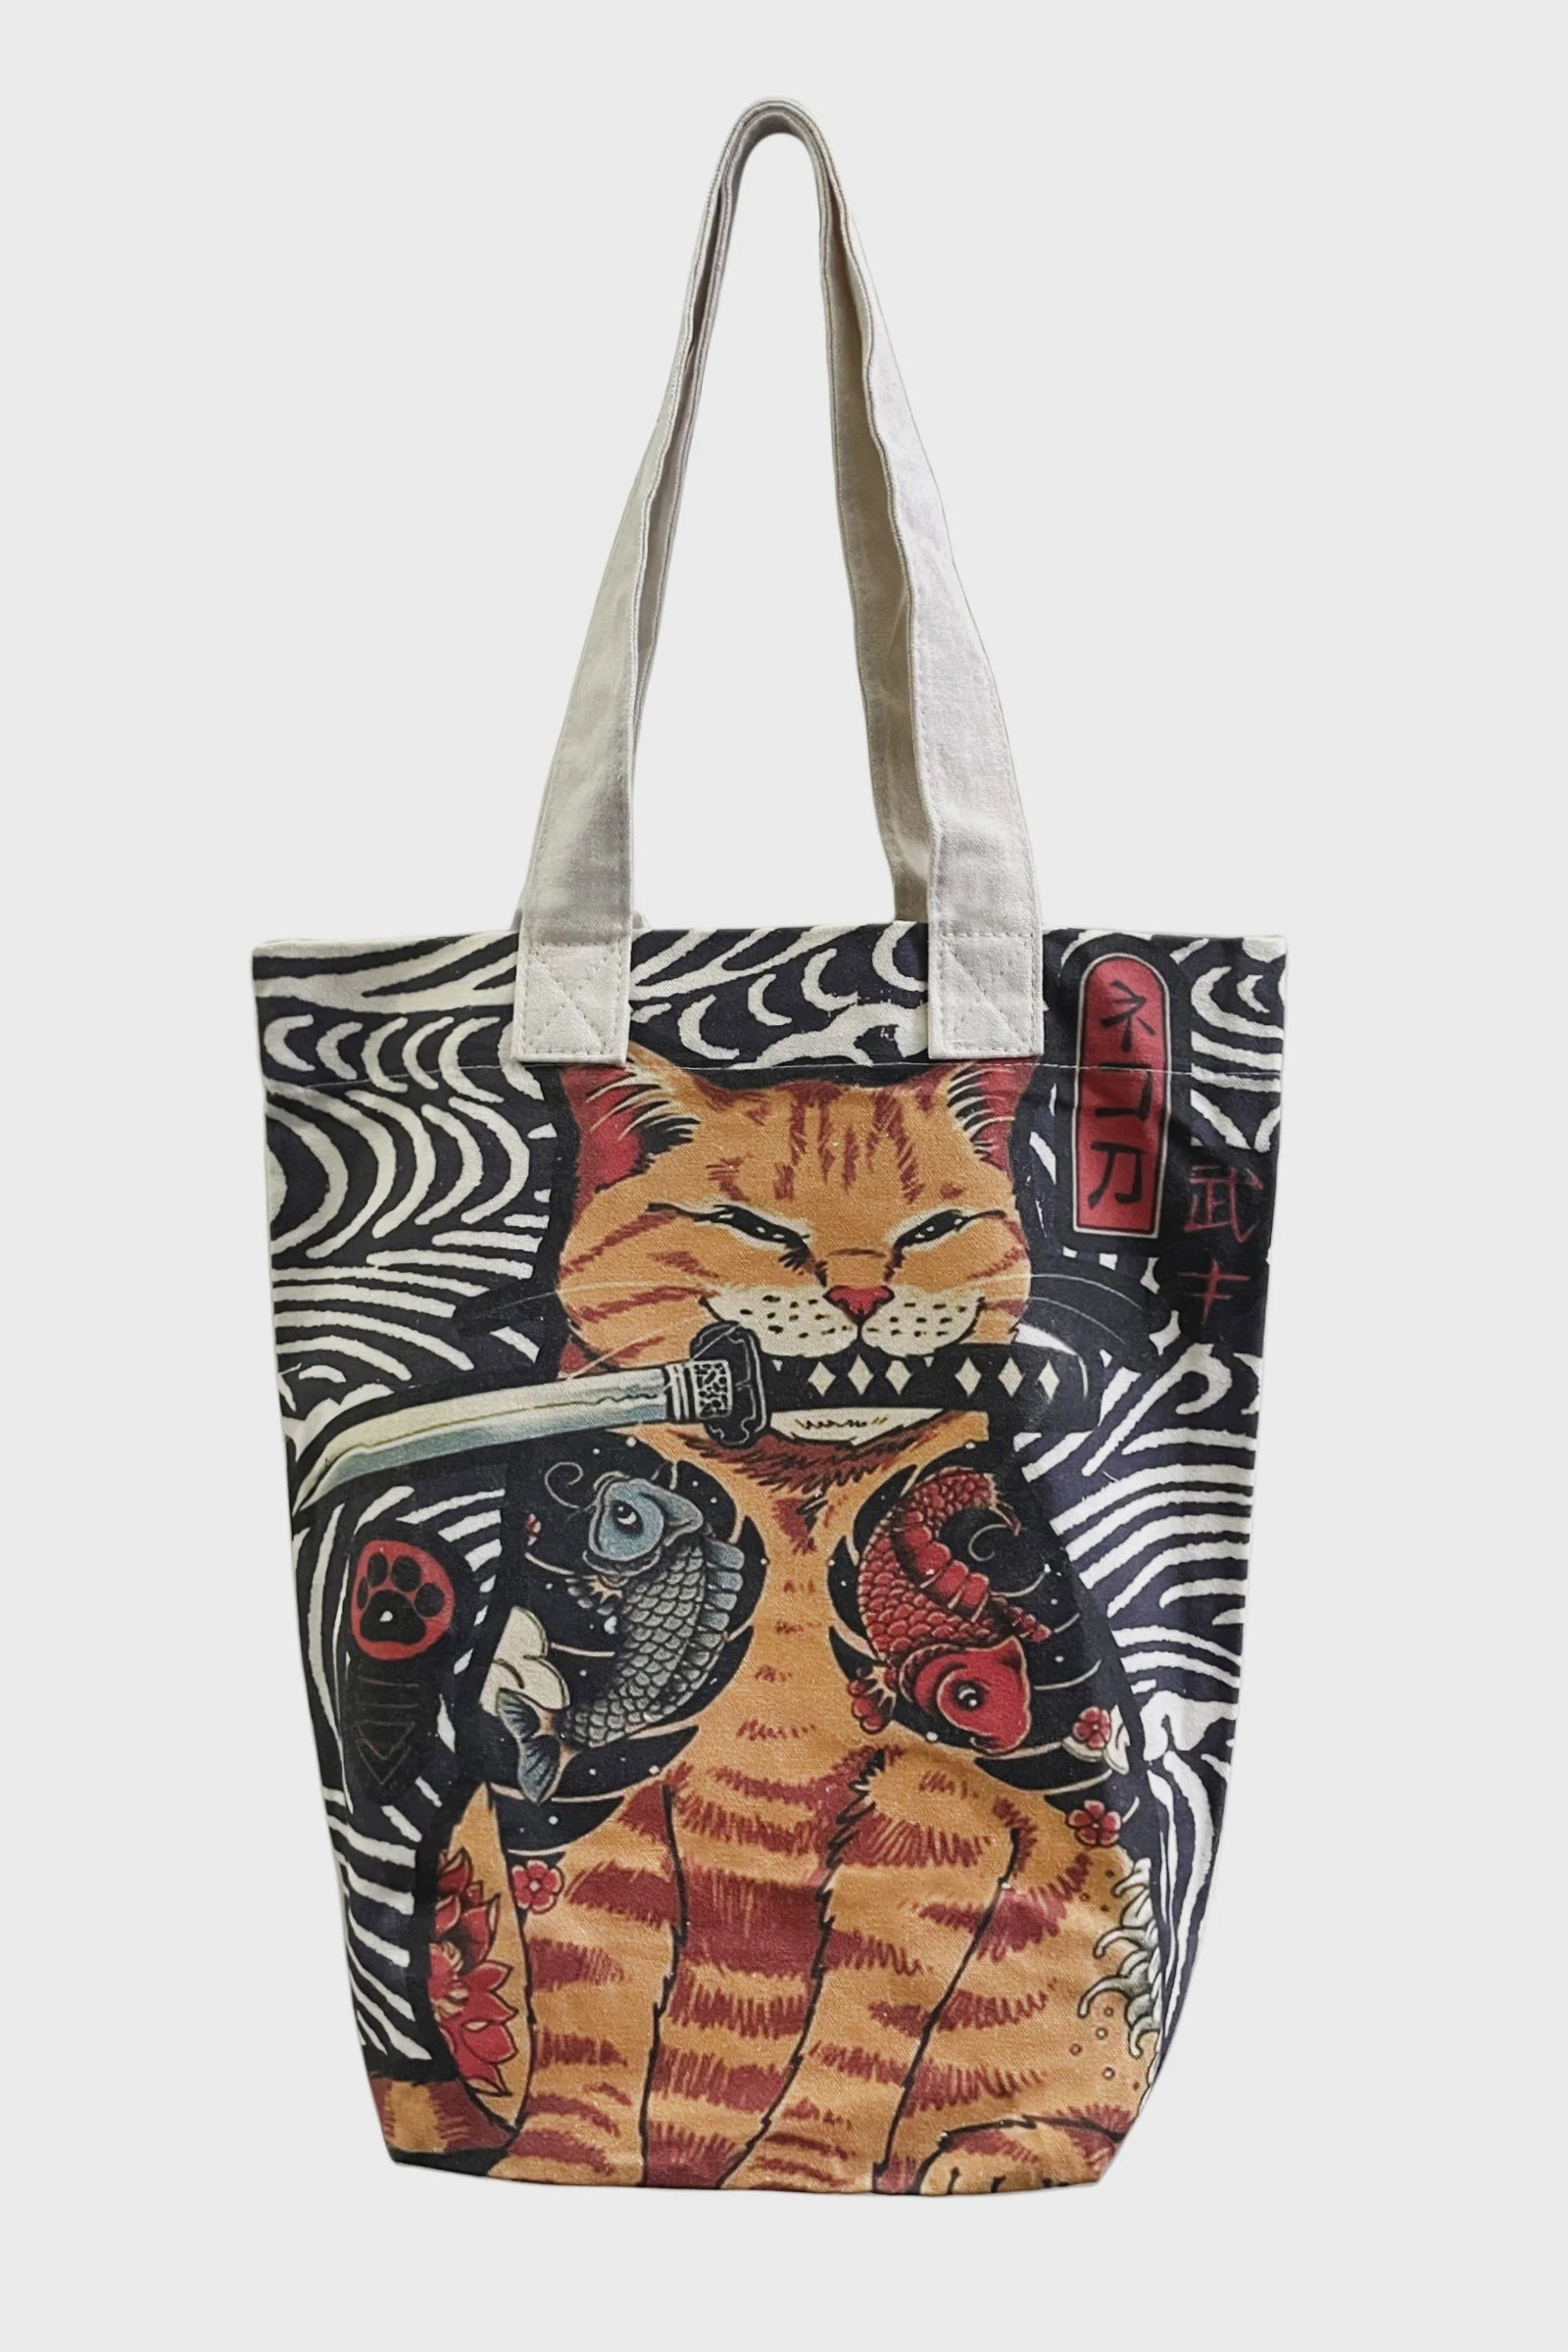 Tote Bag - Samurai Cat